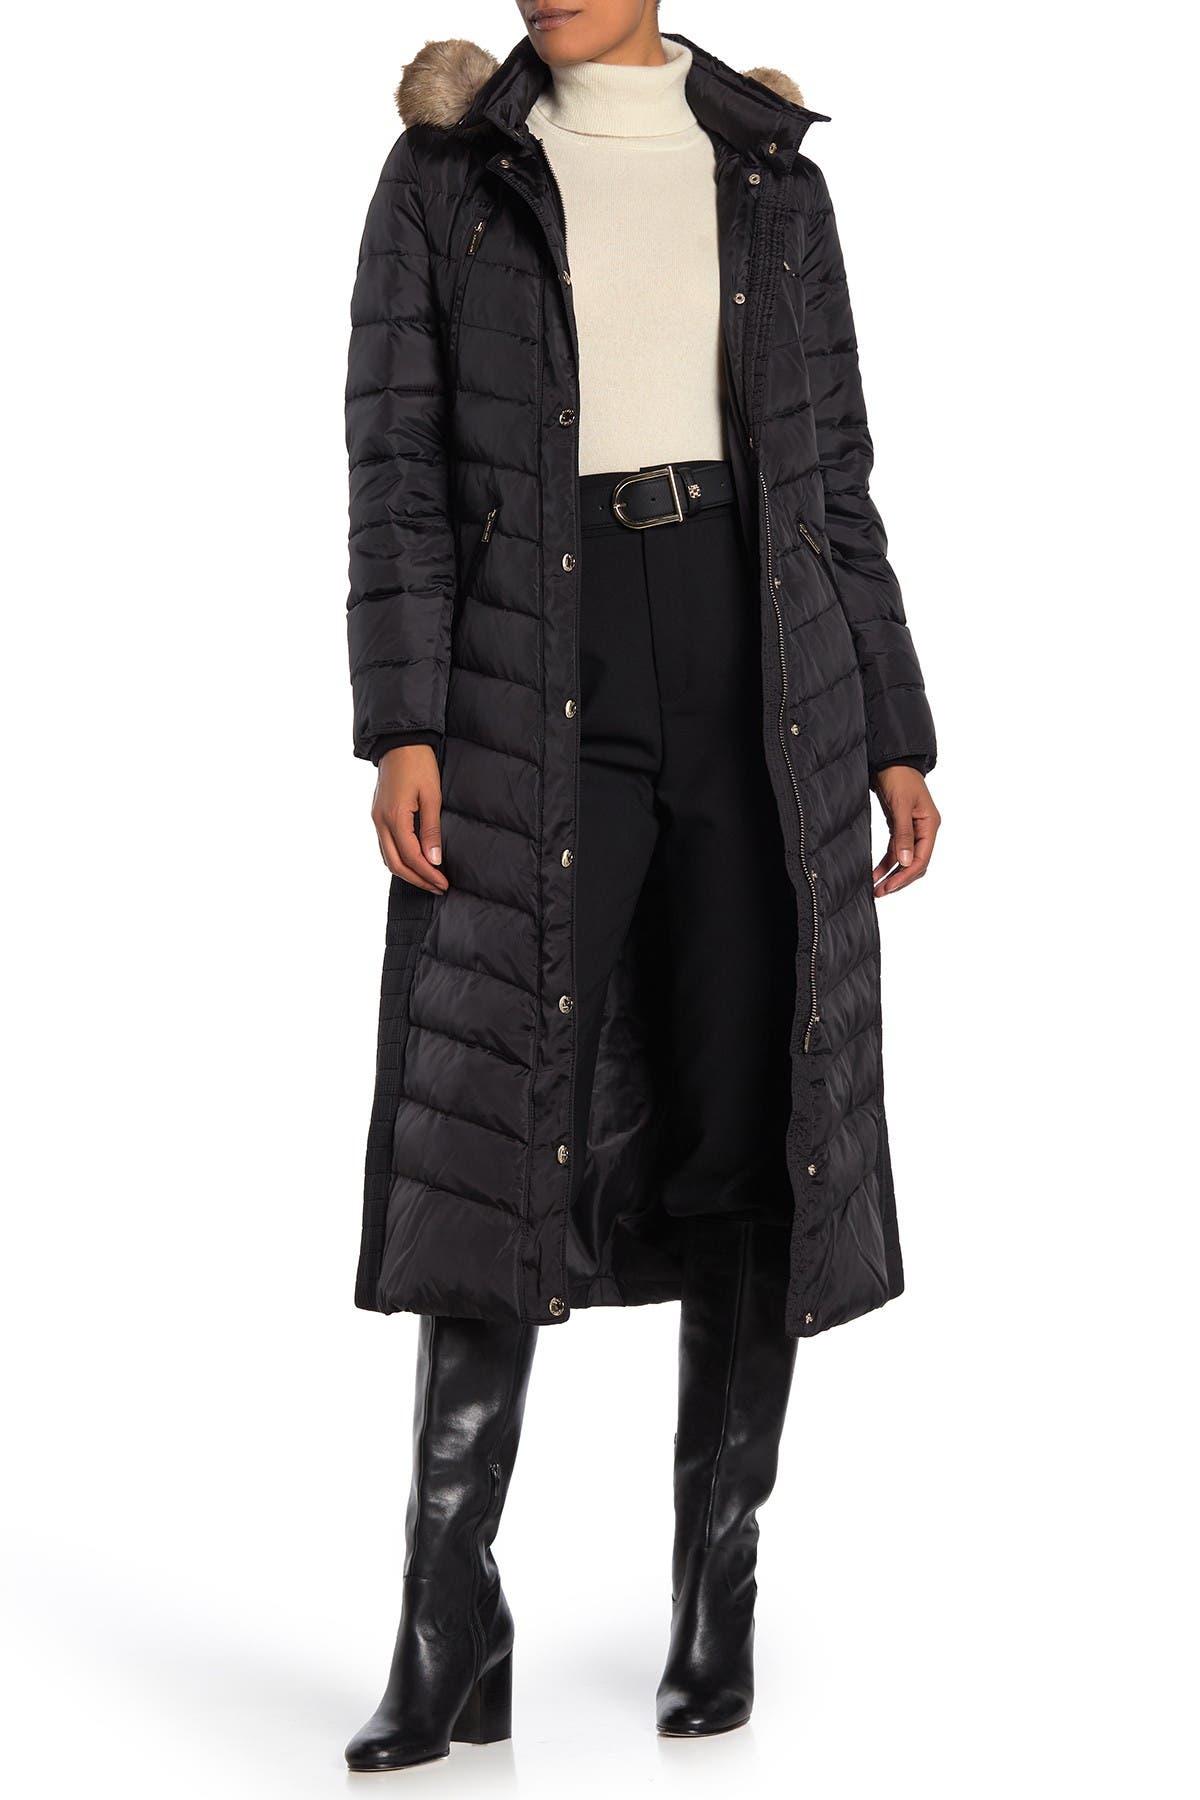 michael kors petite faux fur trim hooded coat